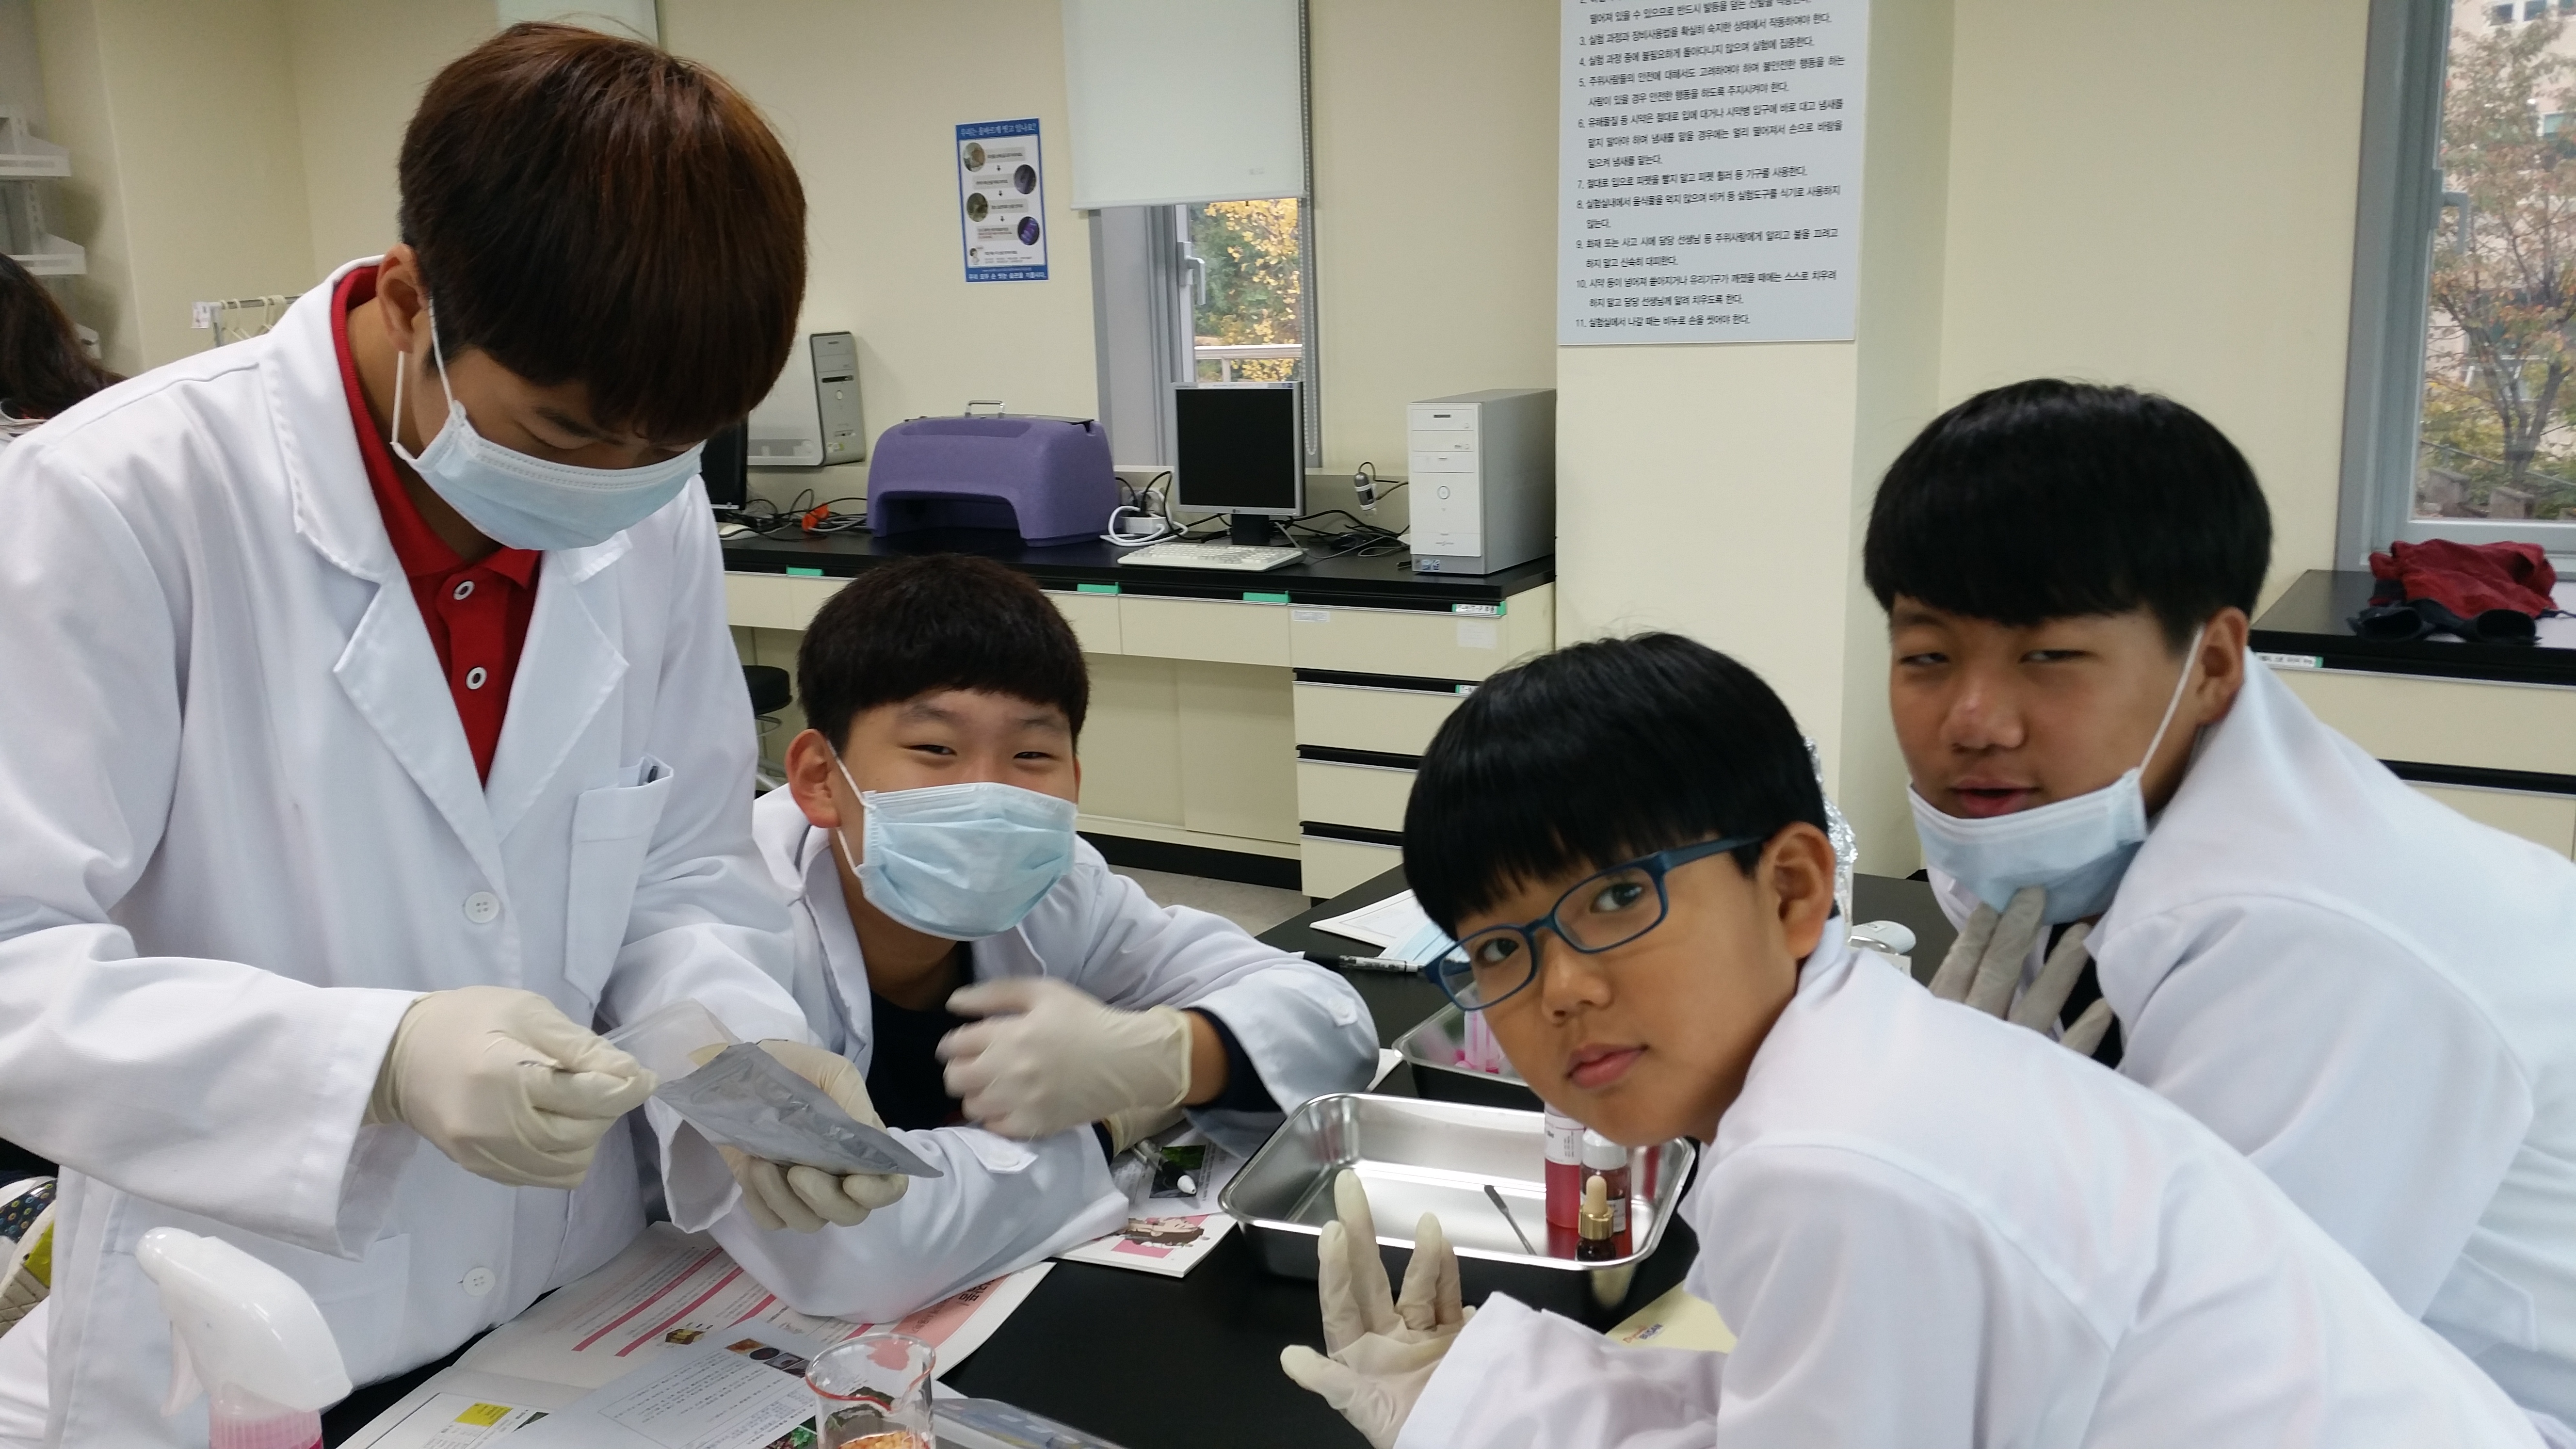 덕양초등학교(약품교실, 2014년 10월 28일)